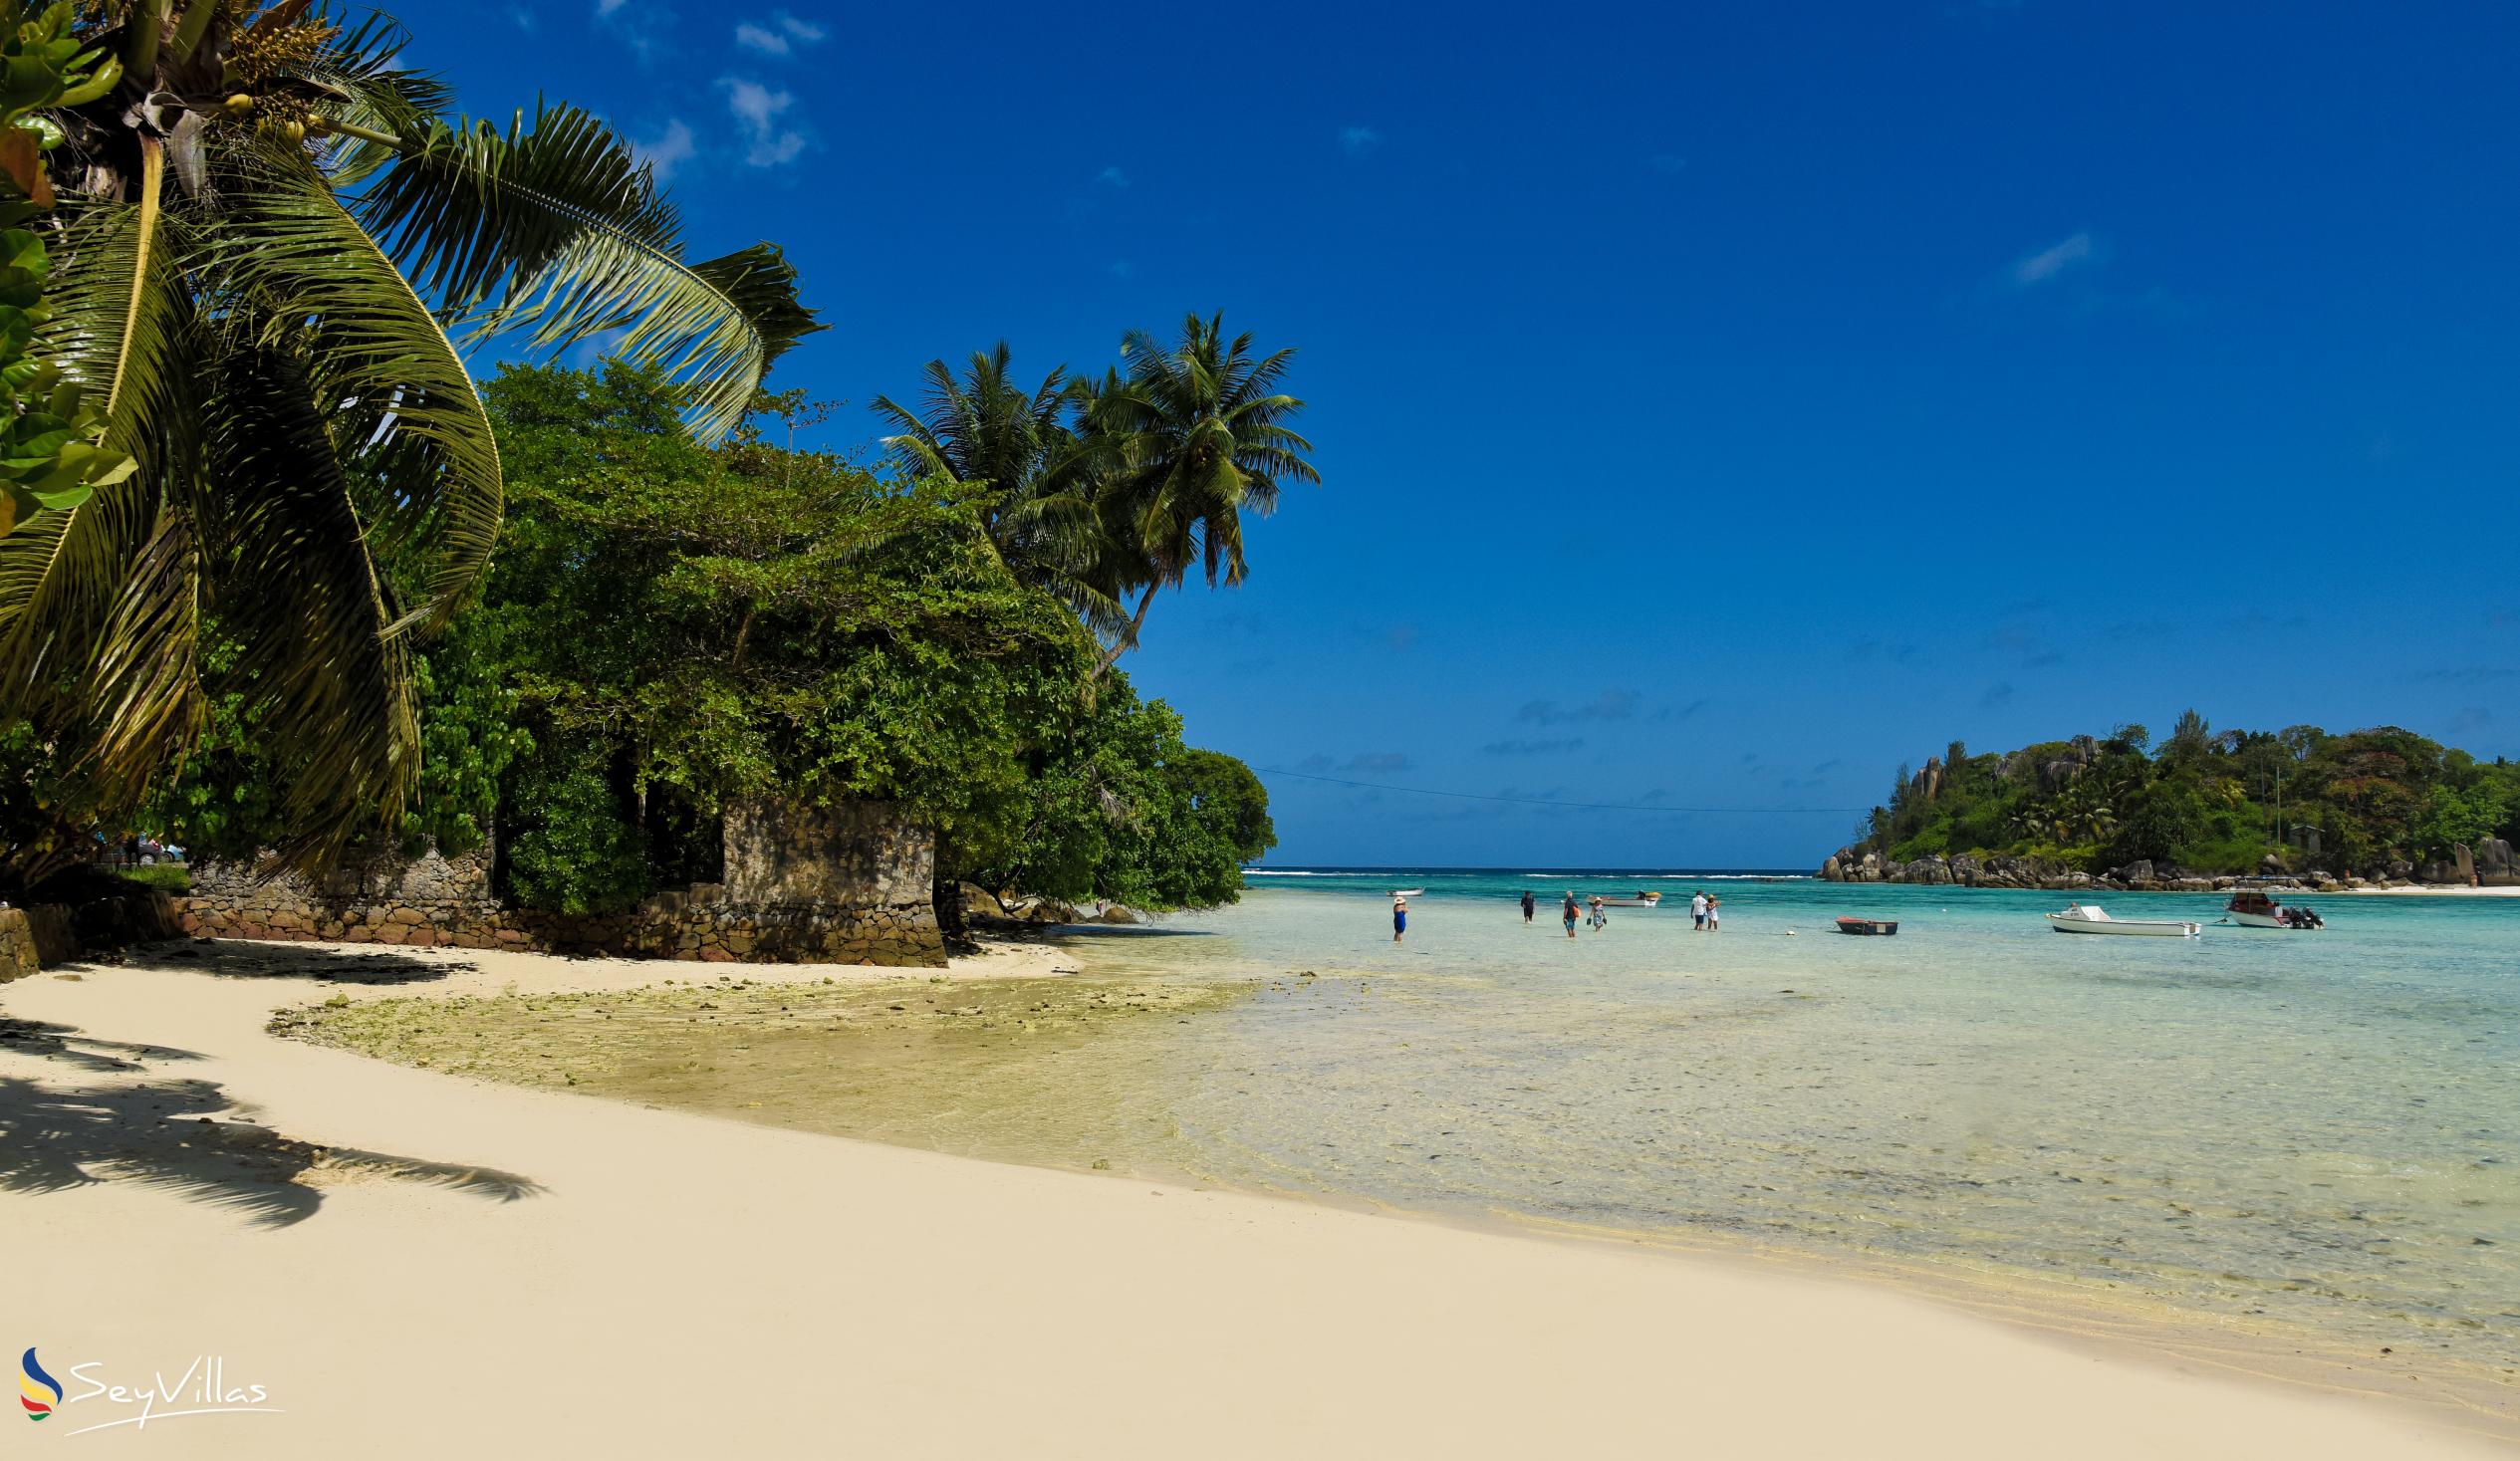 Photo 7: Port Launay South Beach - Mahé (Seychelles)